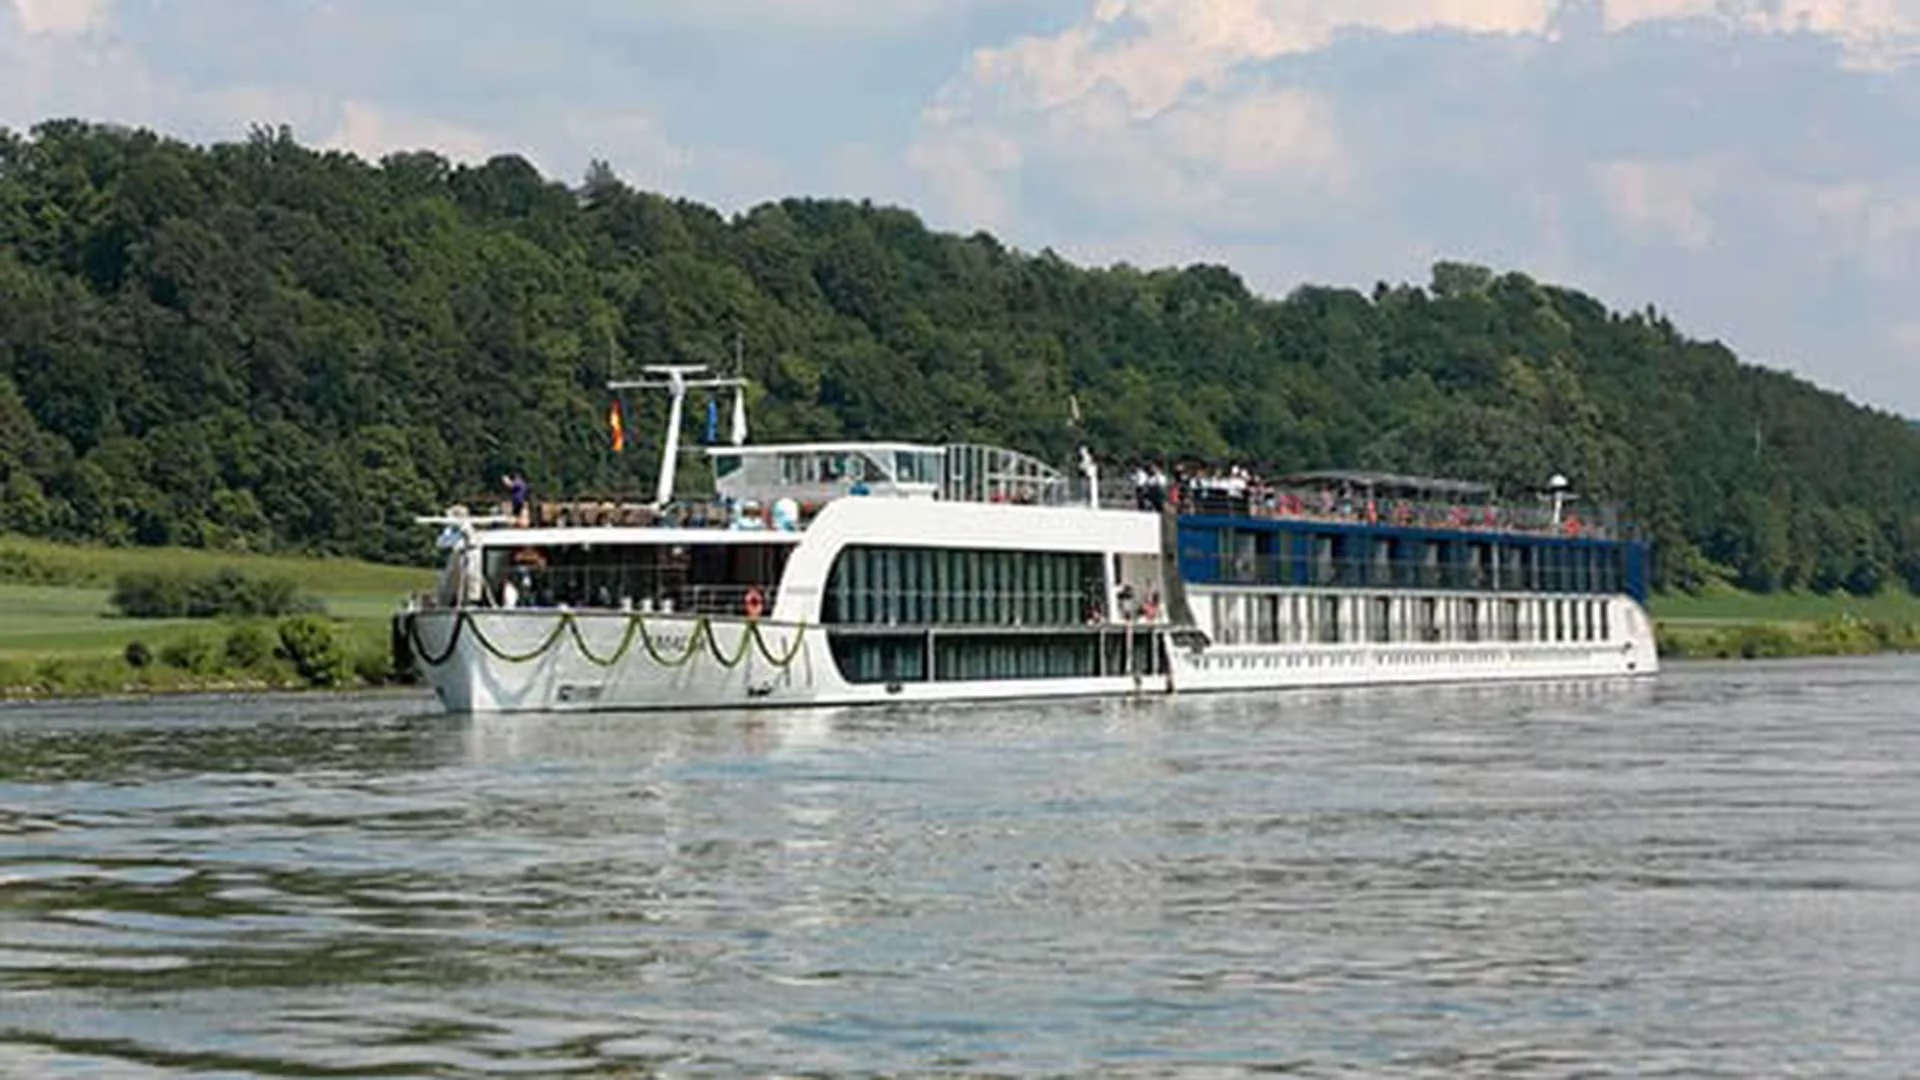 the Amalea Cruise Ship on a river